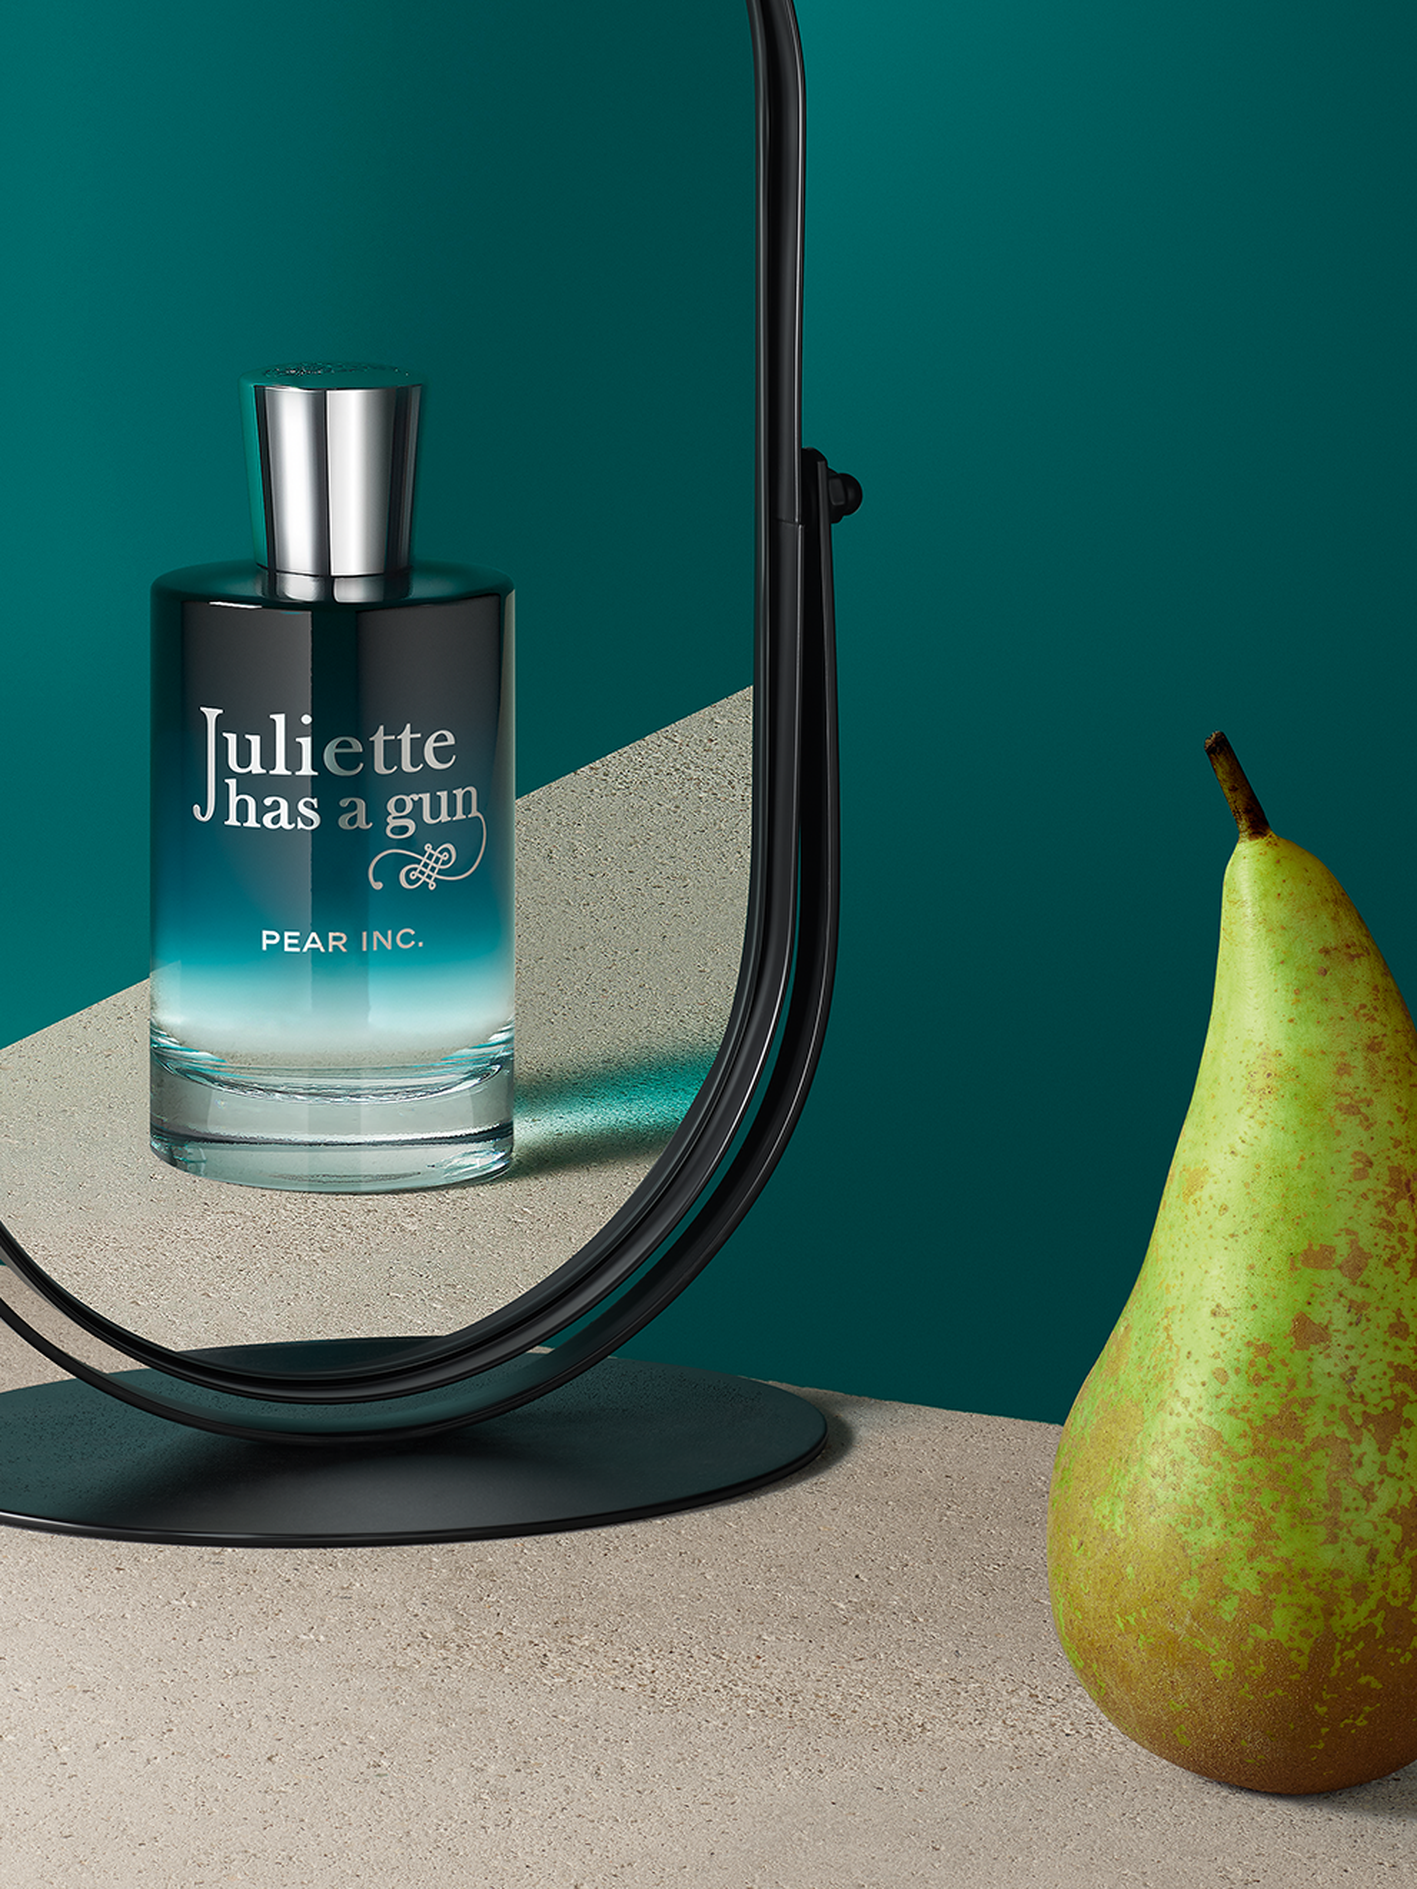 Novi Juliette Has a Gun parfem odaje počast kruški: Nestašan parfem izmamit će vam osmijeh na lice